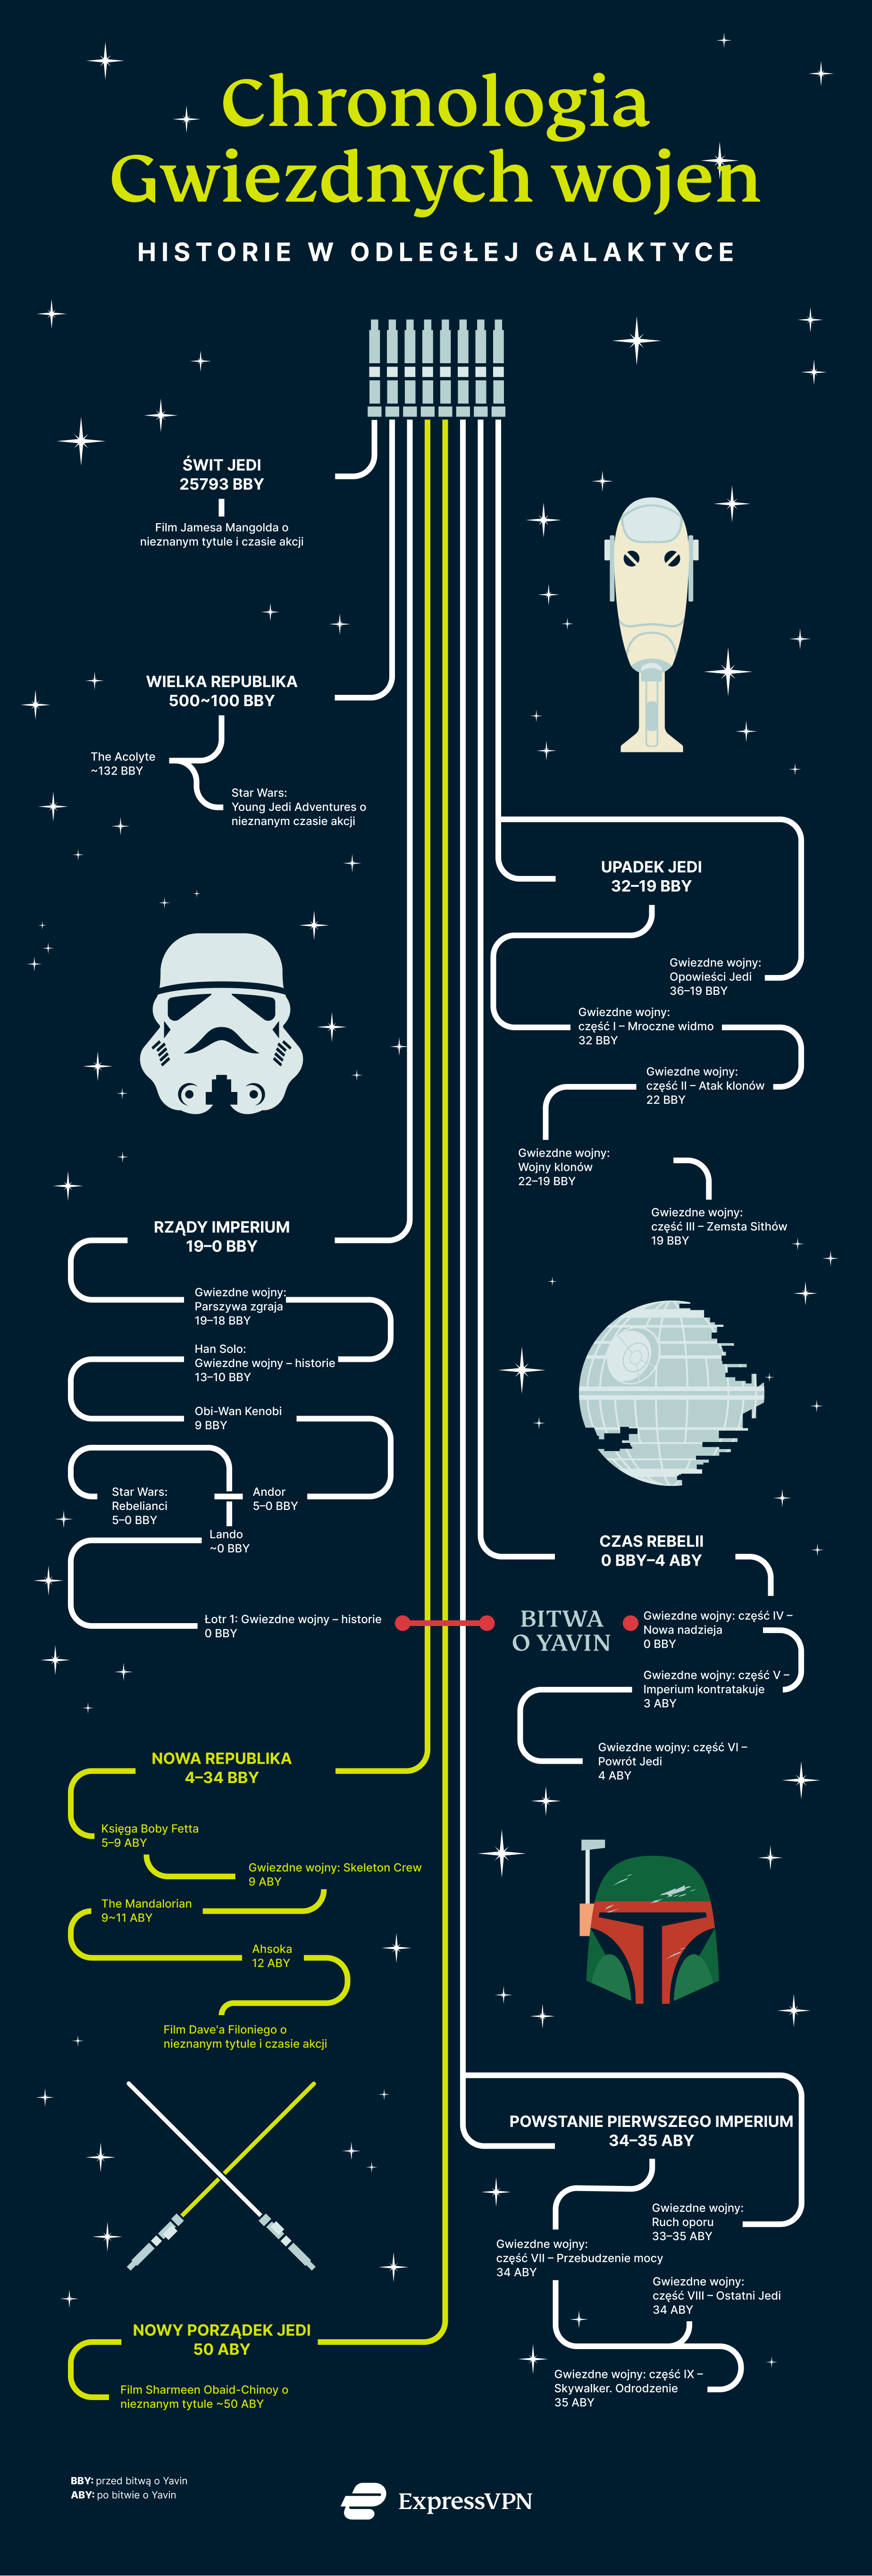 Chronologia Gwiezdnych Wojen